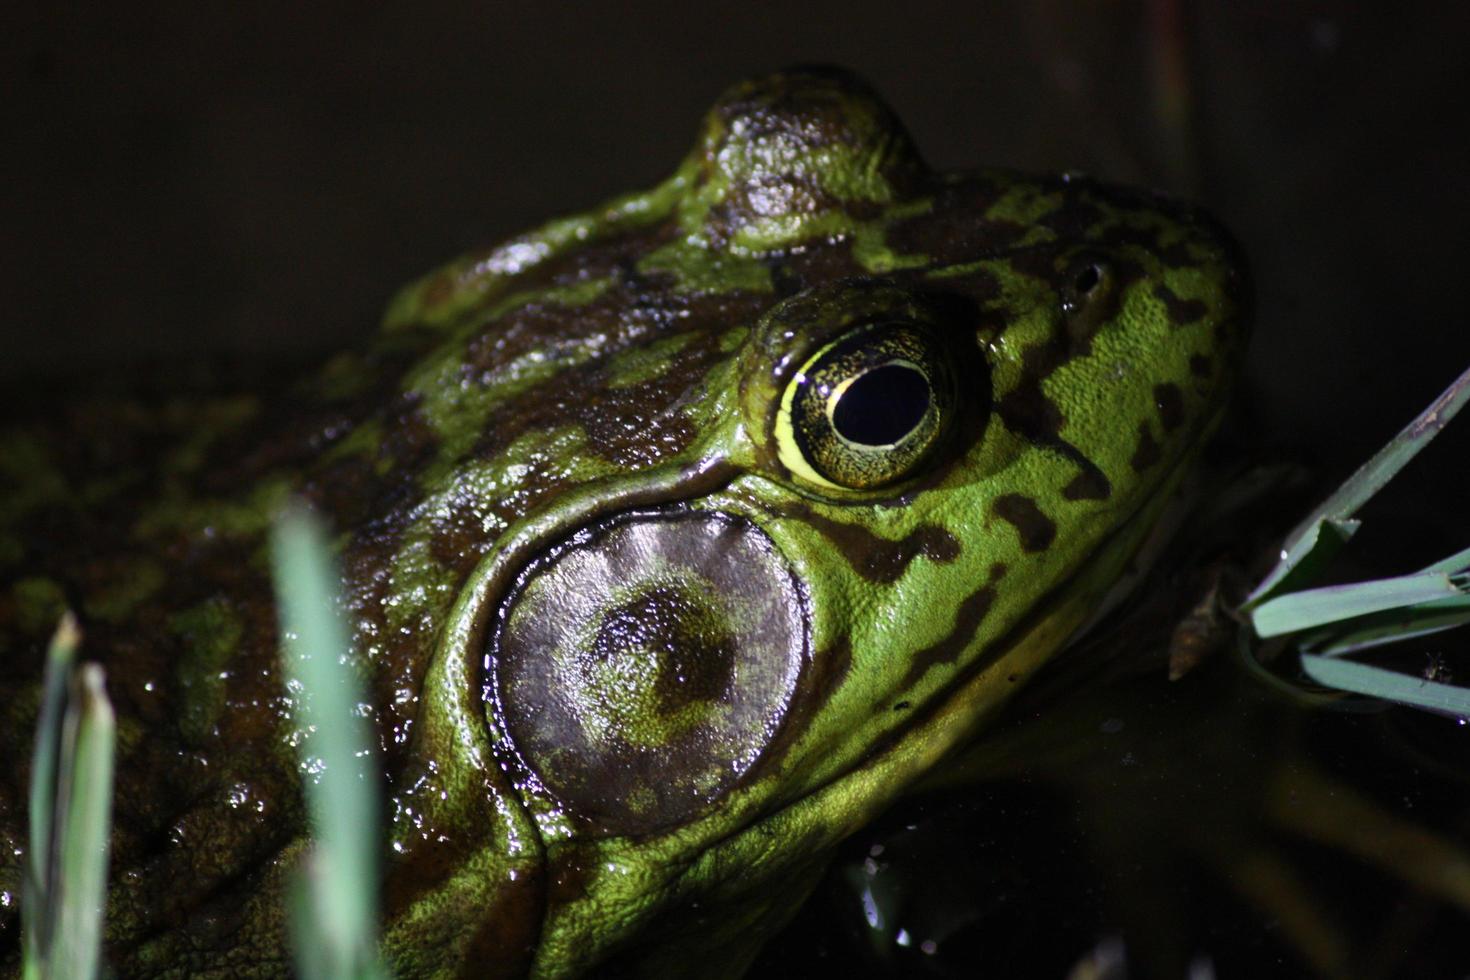 Closeup of American Bullfrog profile in the dark photo